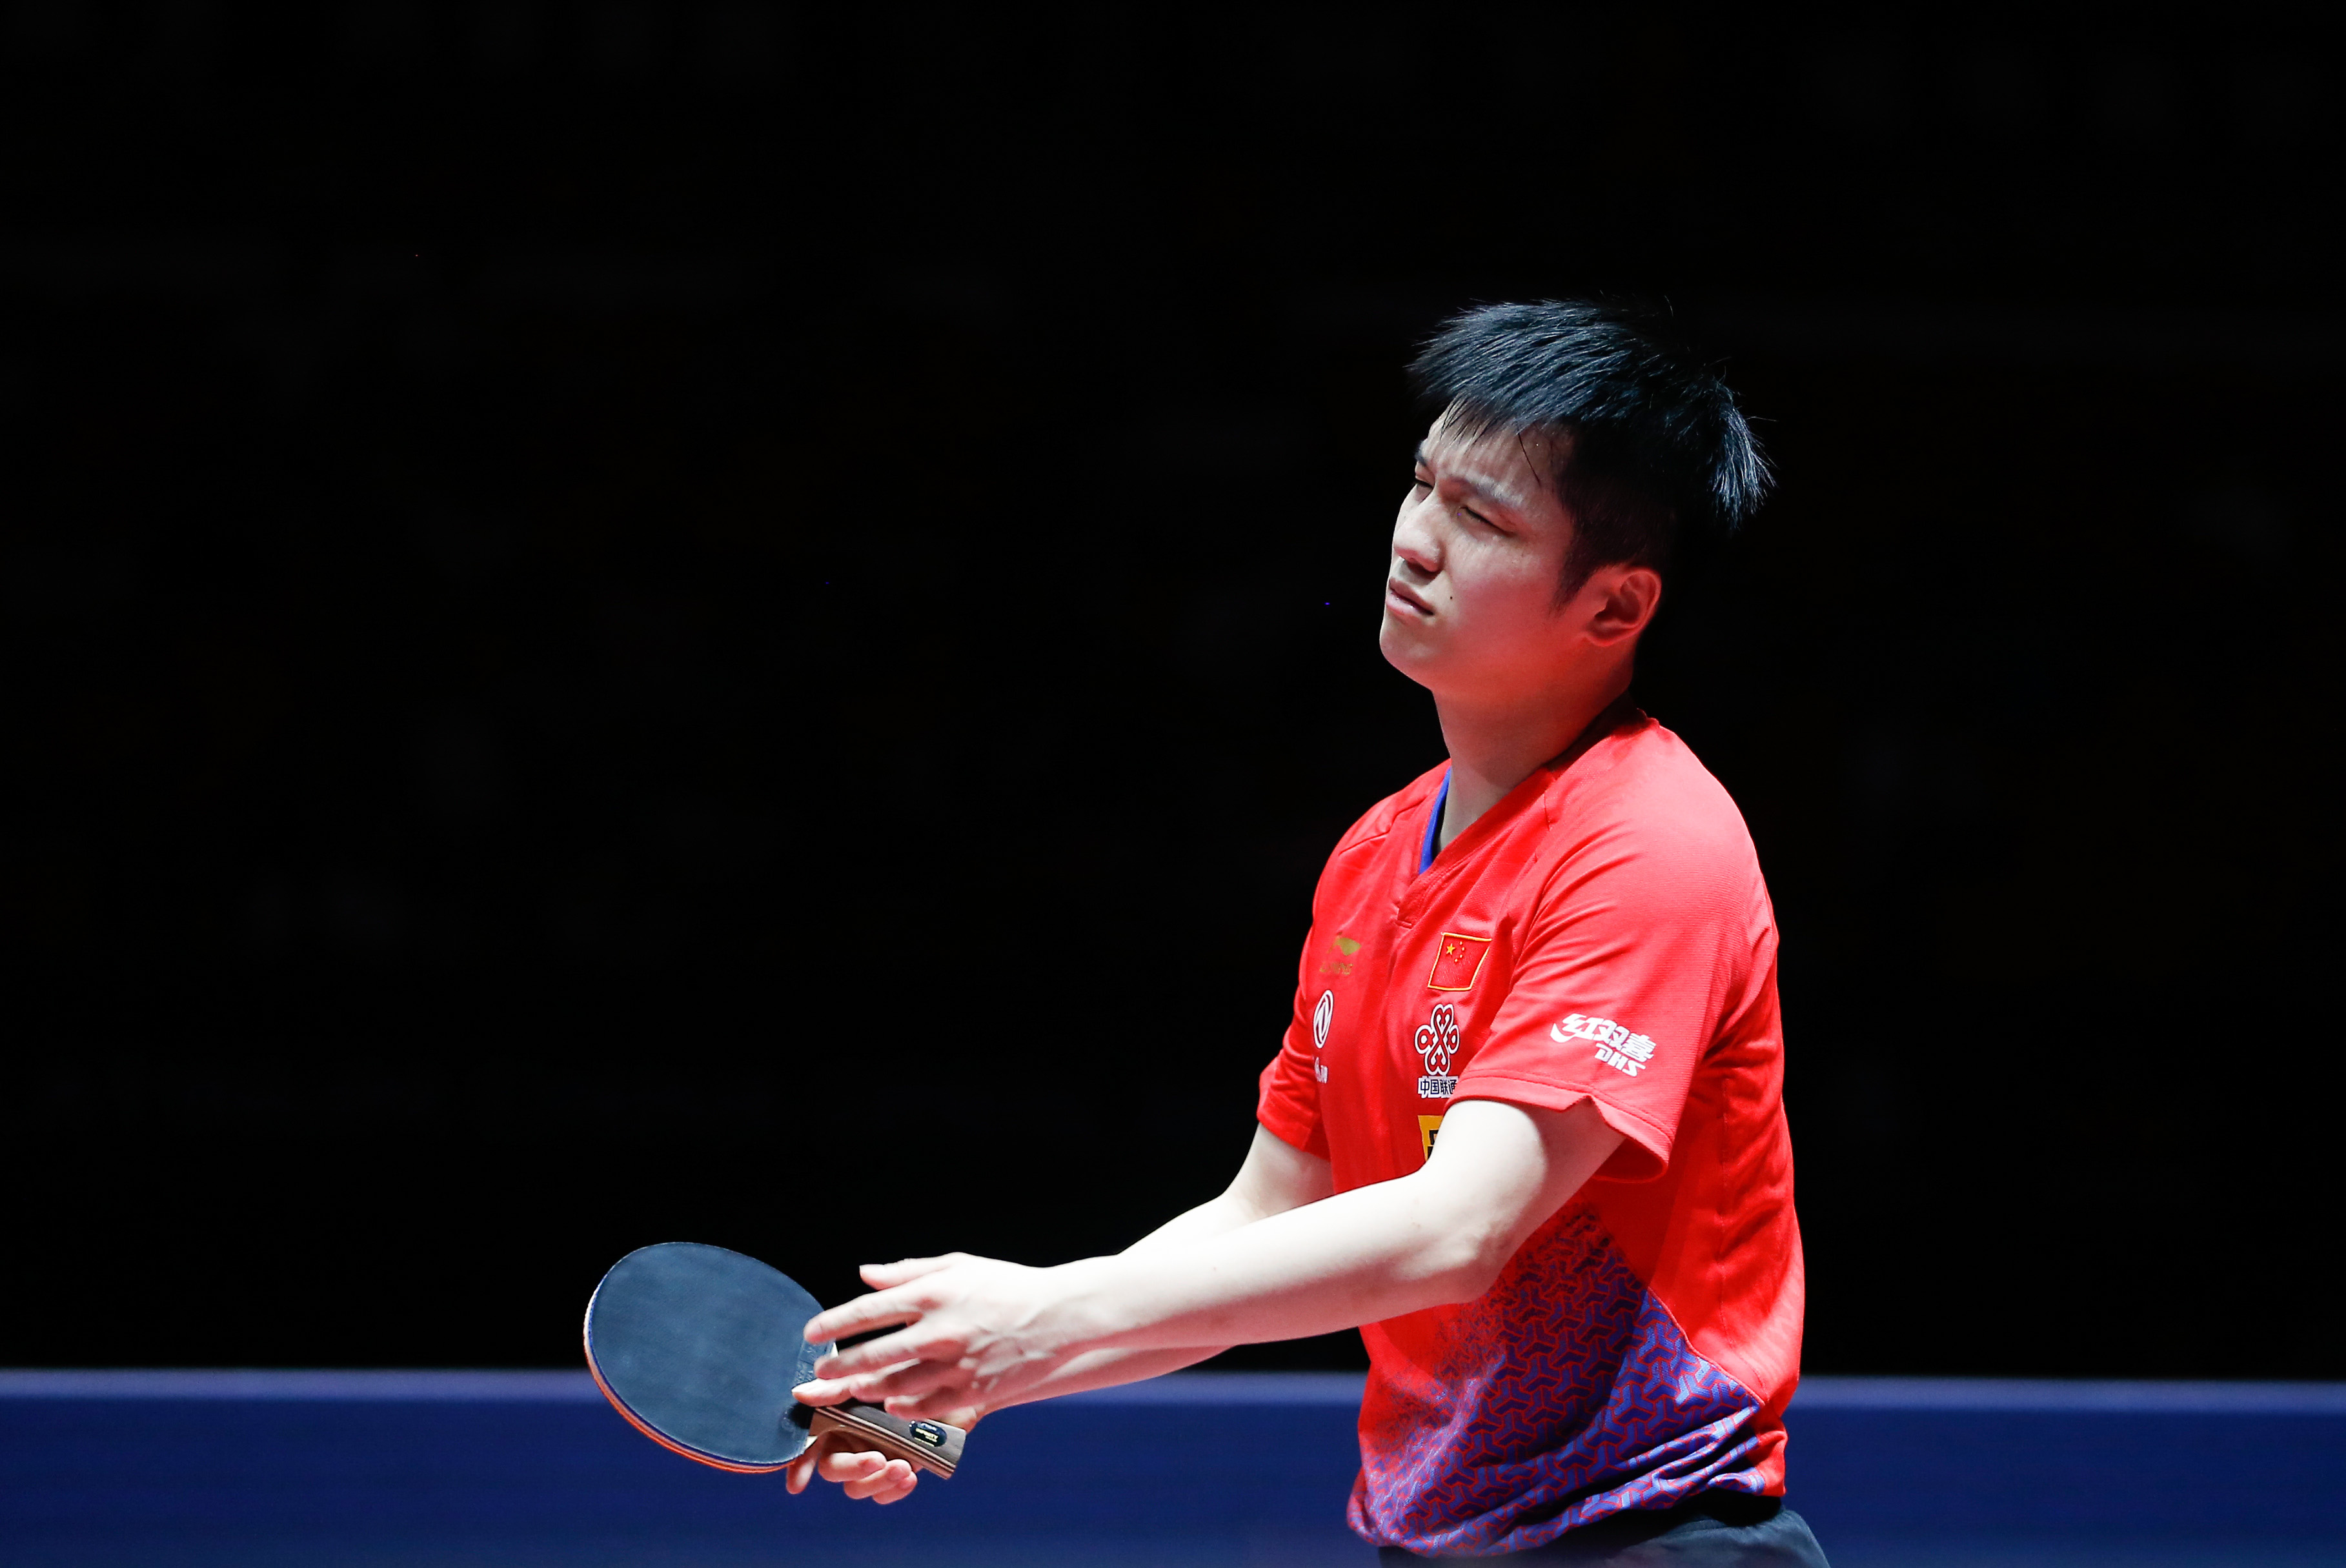 当日,在深圳进行的国际乒联世界巡回赛2019中国乒乓球公开赛男子单打